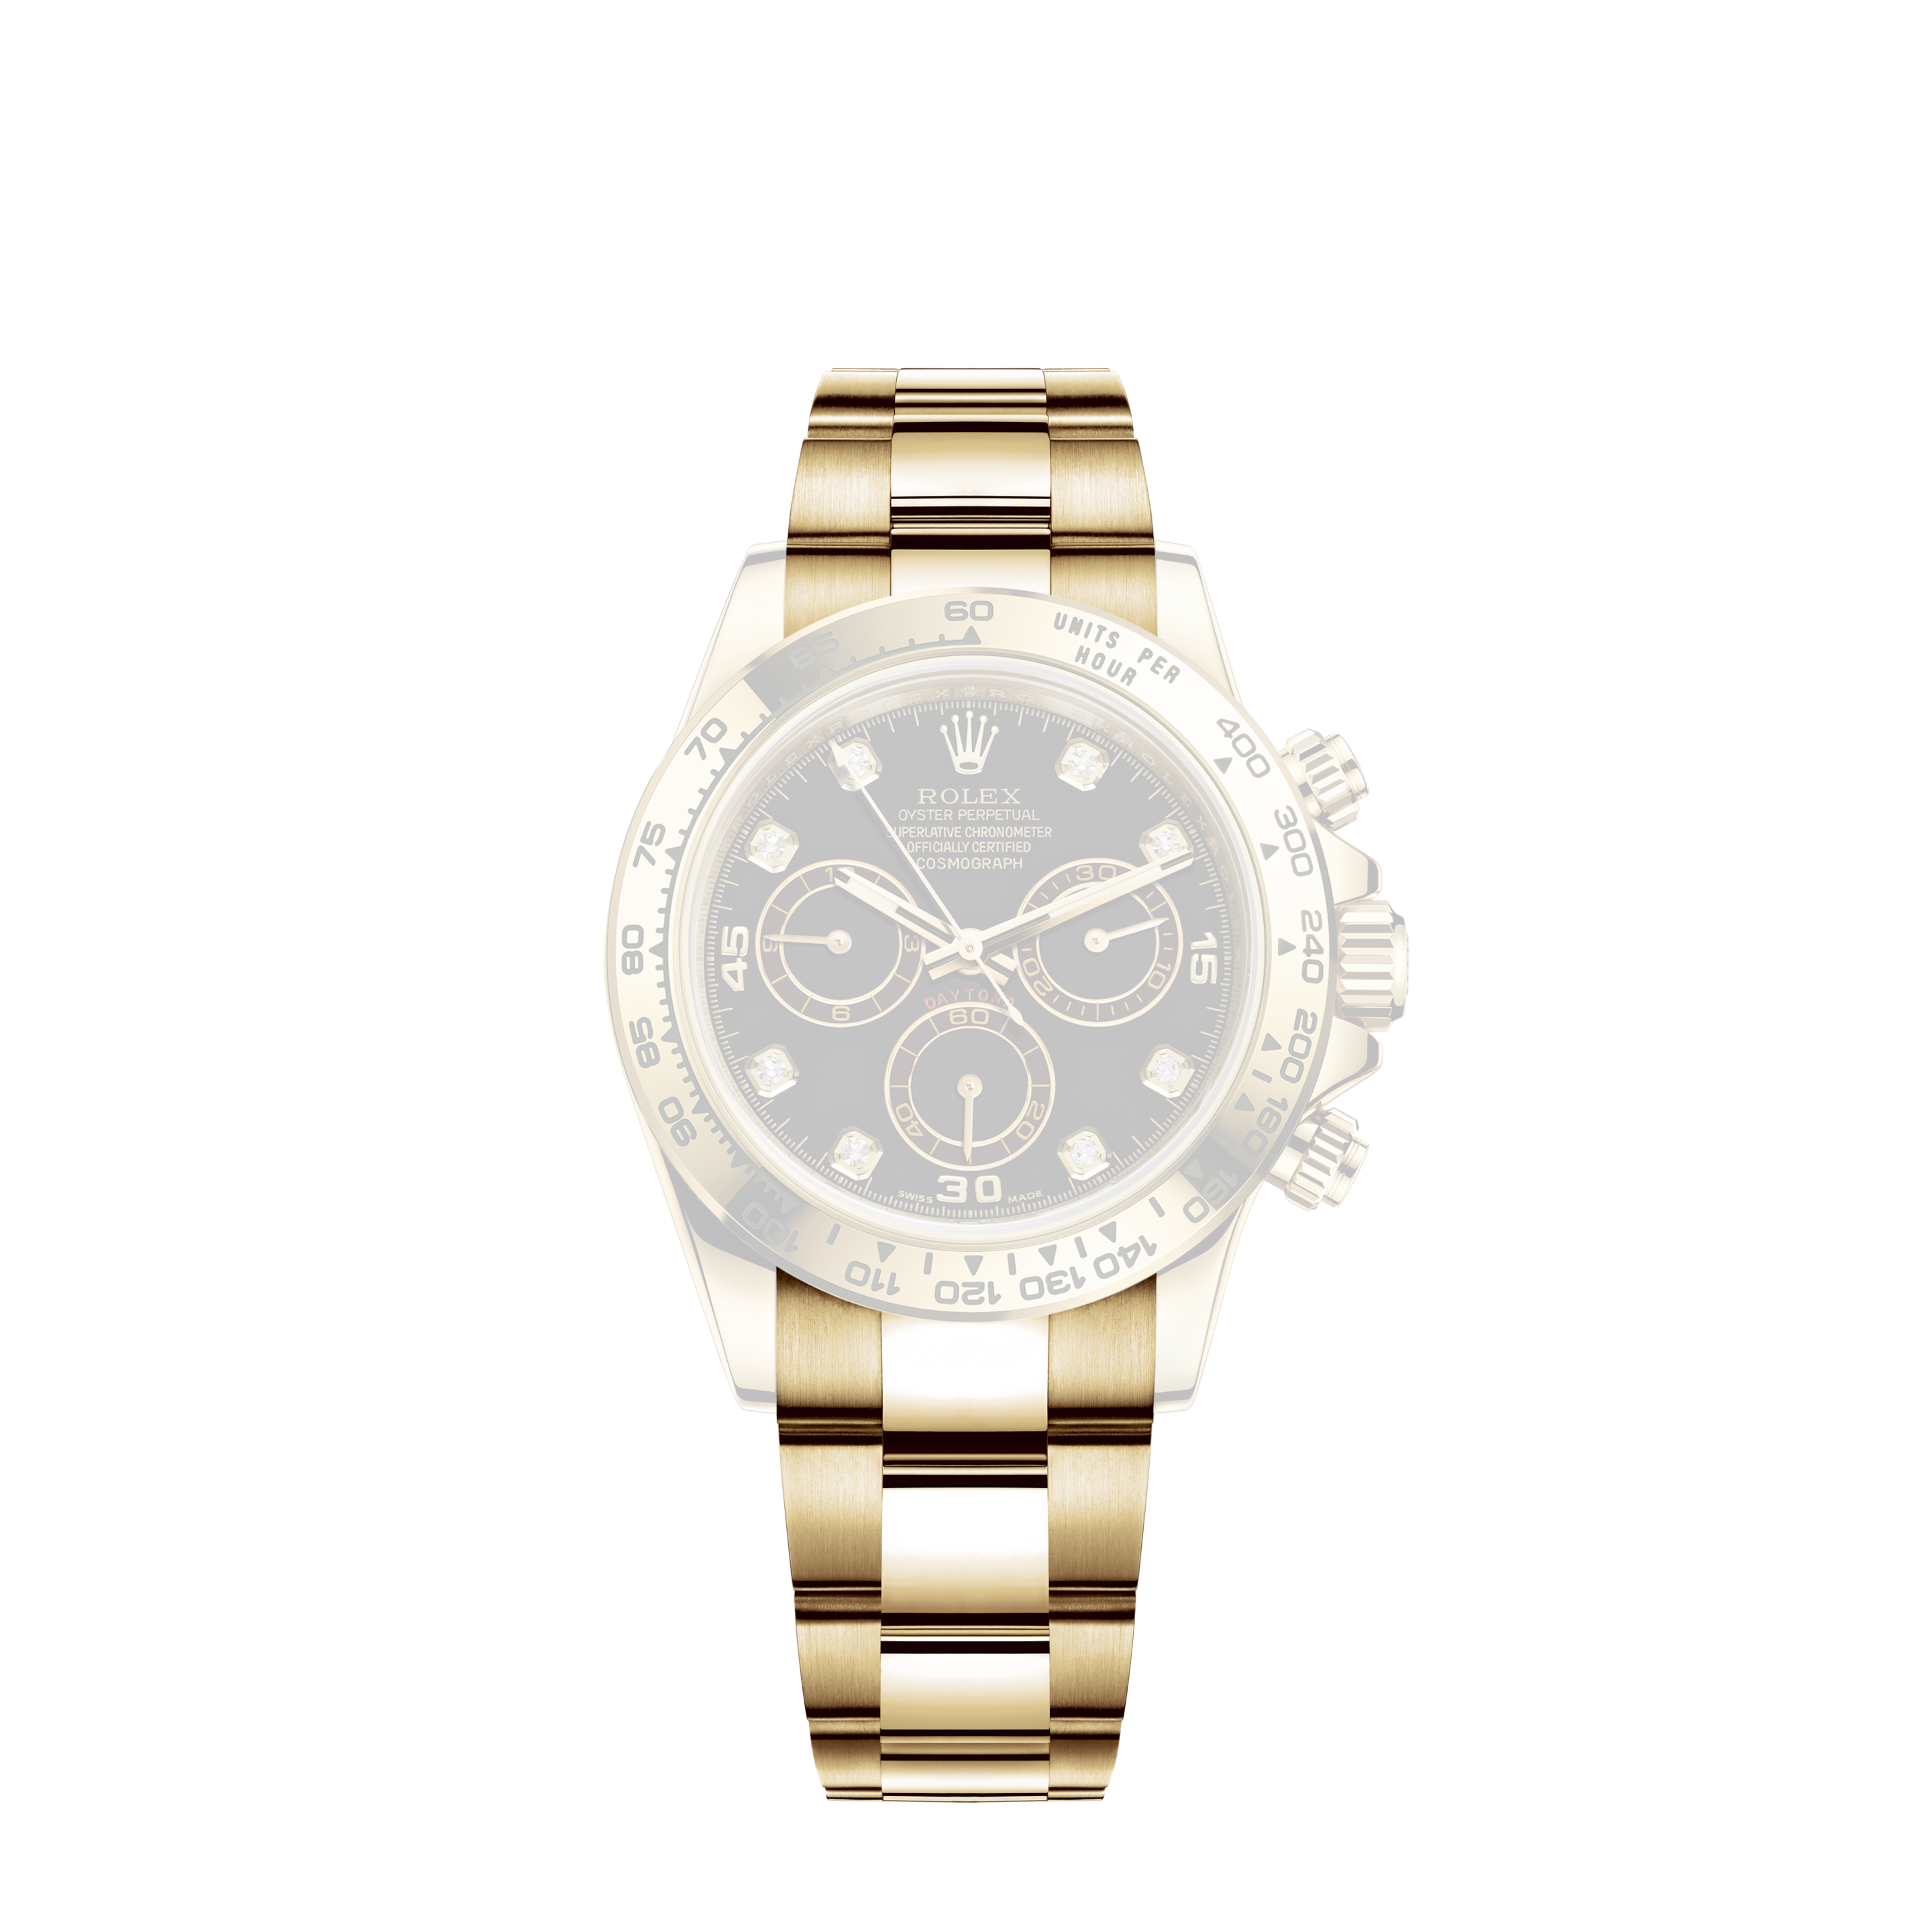 Rolex Submariner Date 16610 300m black dial perfect full set 2006 EXPORT PRICE 10820HT